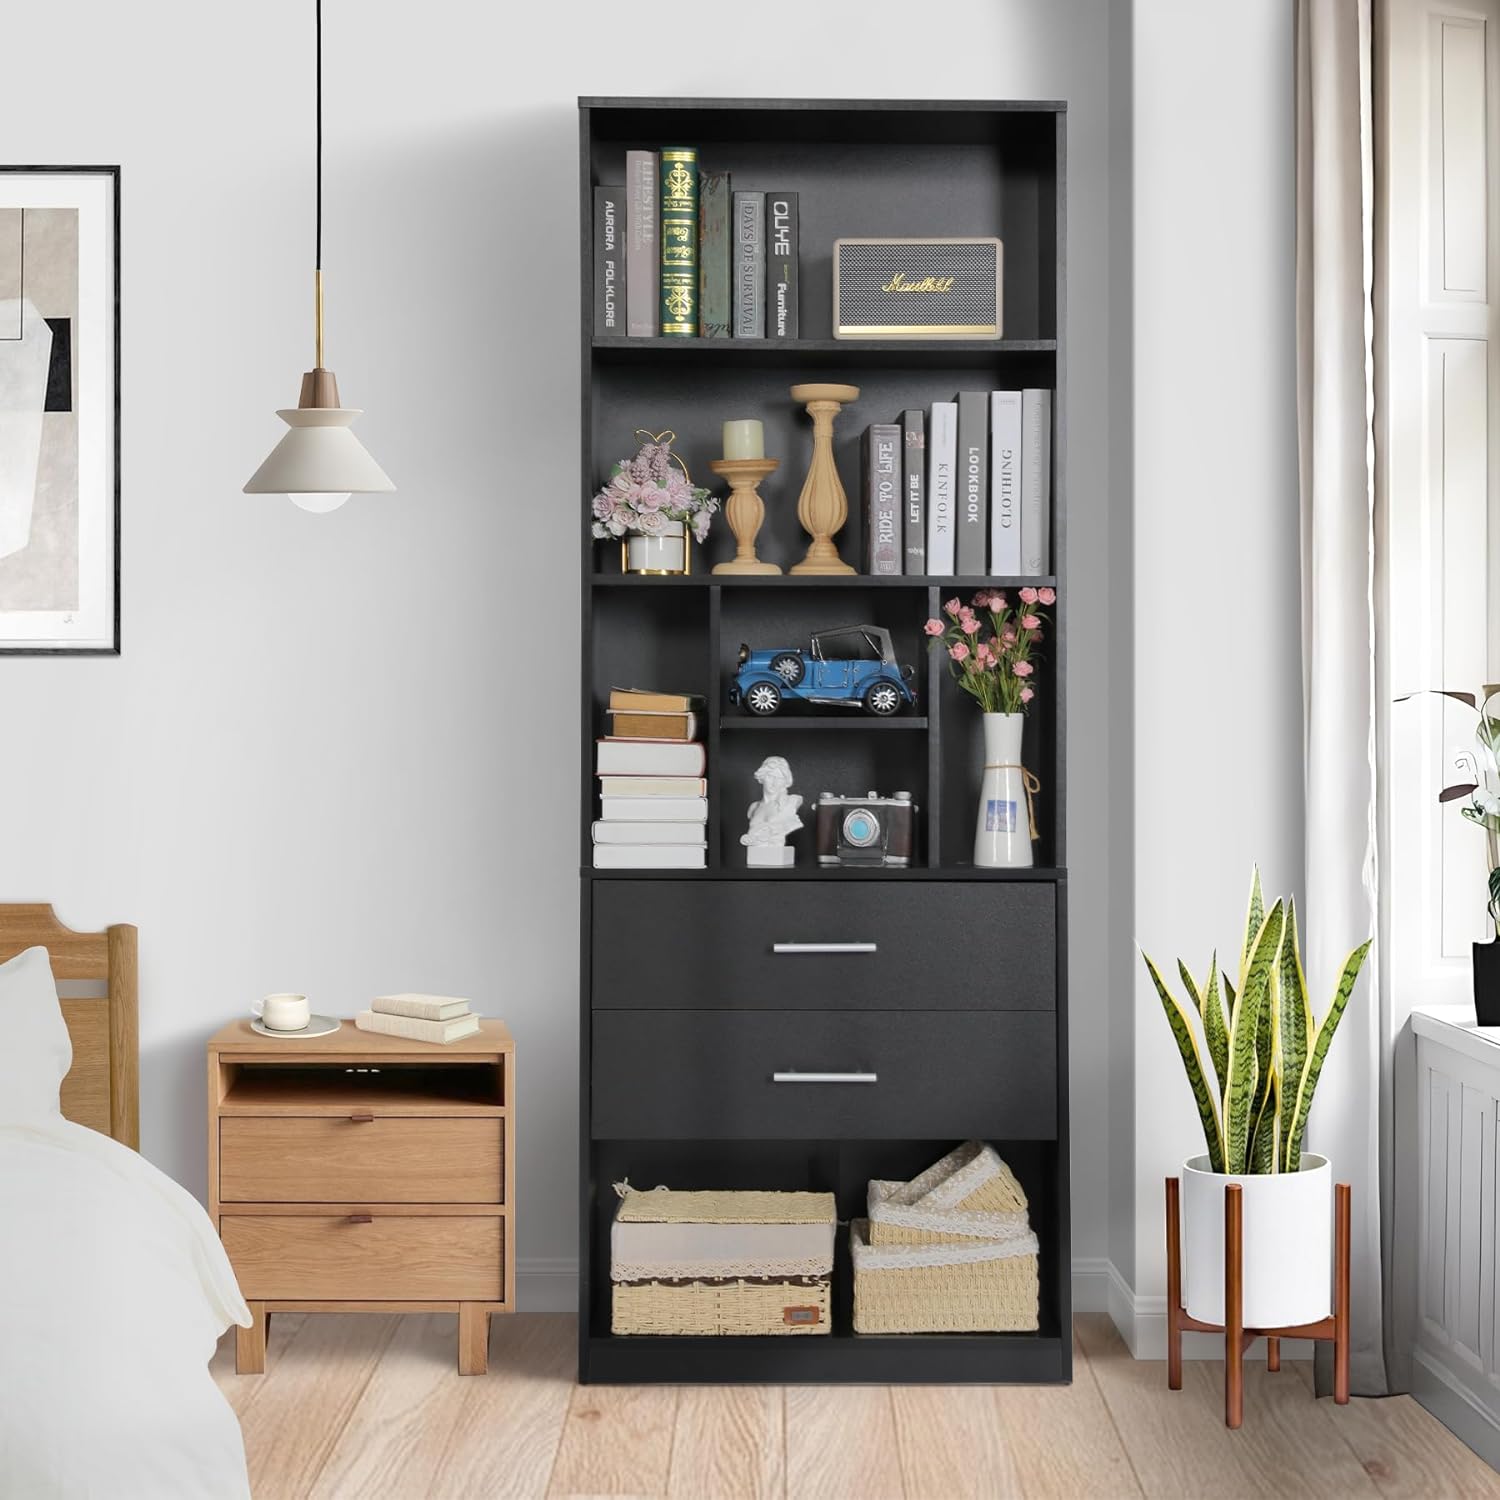 SEJOV 71" Tall Black Bookcase w/2 Drawers, Modern Floor Standing Wood Bookshelf w/5-Tier Open Shelves for Bedroom, Living Room, Office